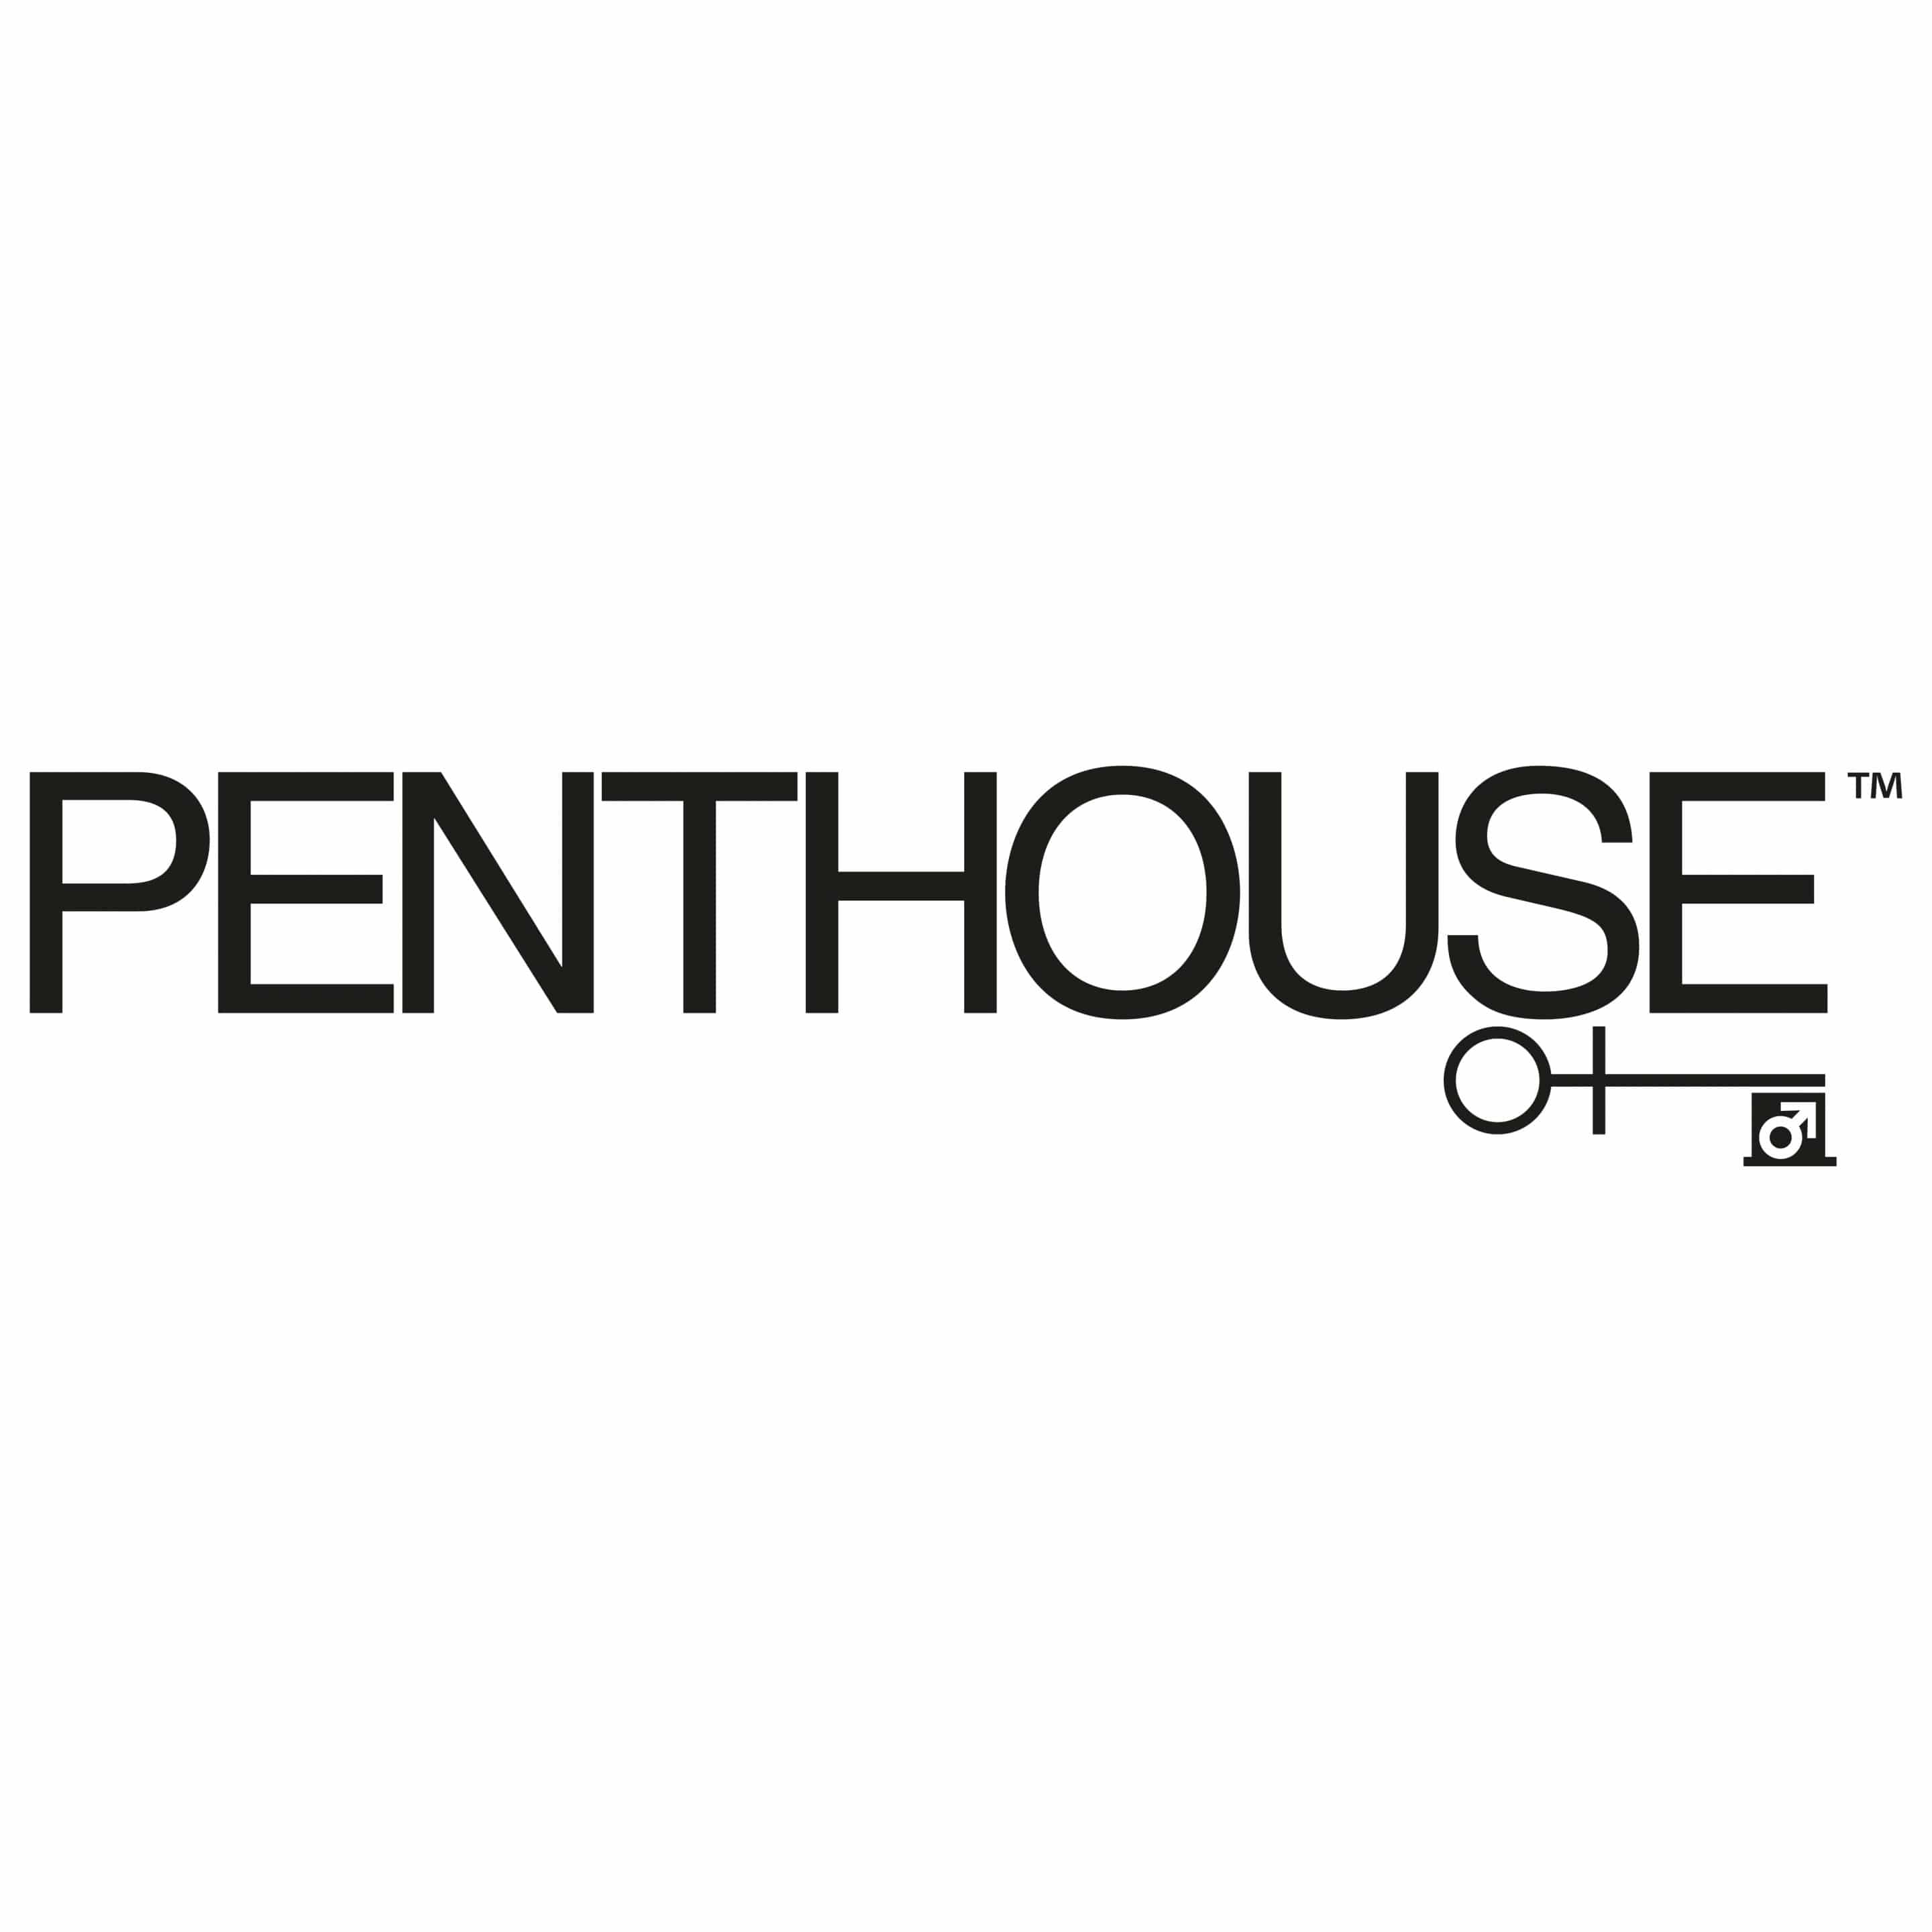 penthouse-lingerie